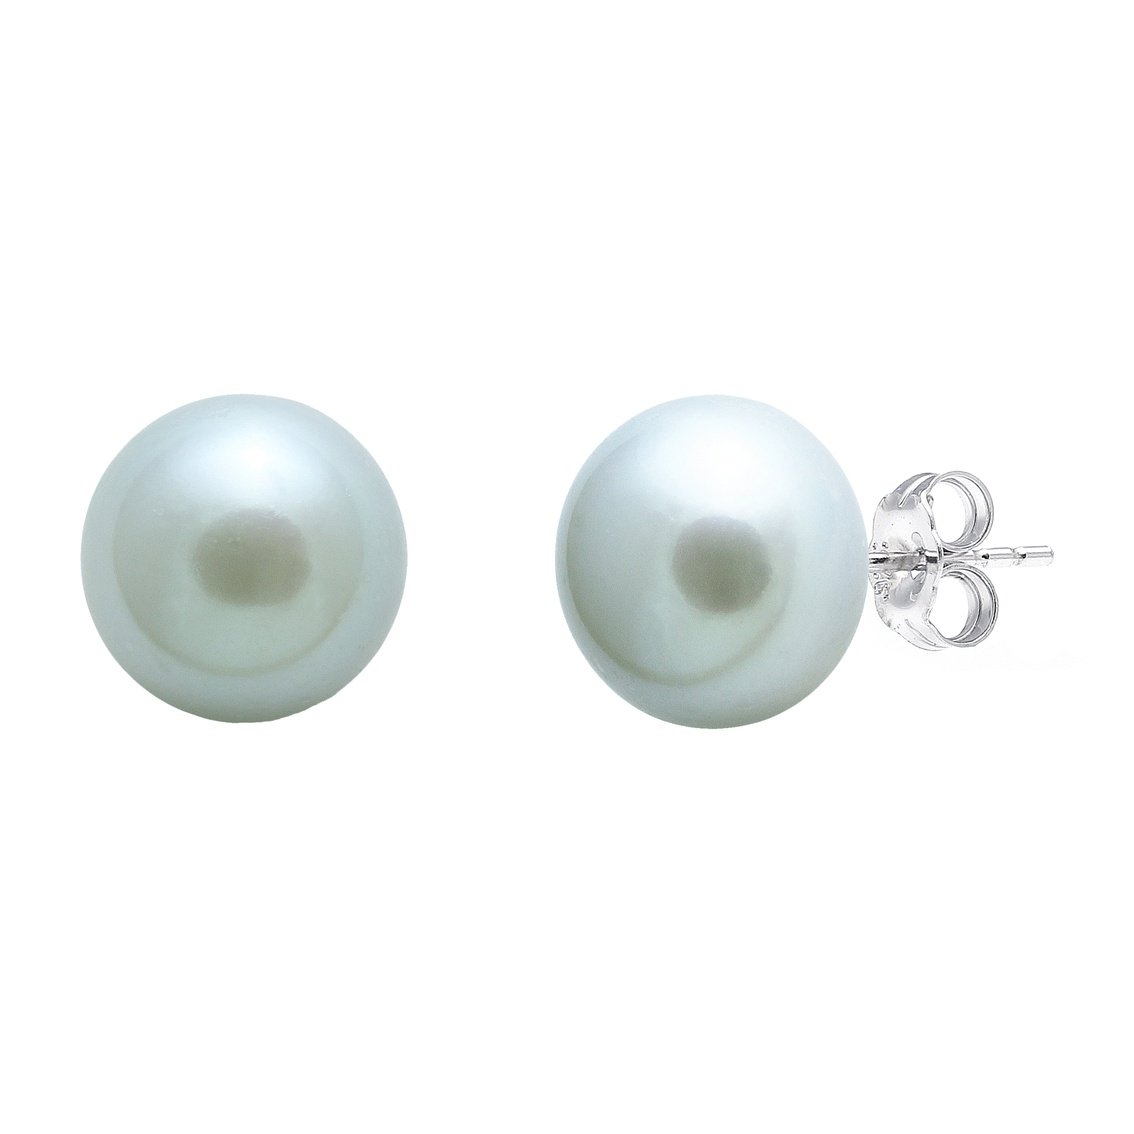 Grey freshwater pearl stud earrings